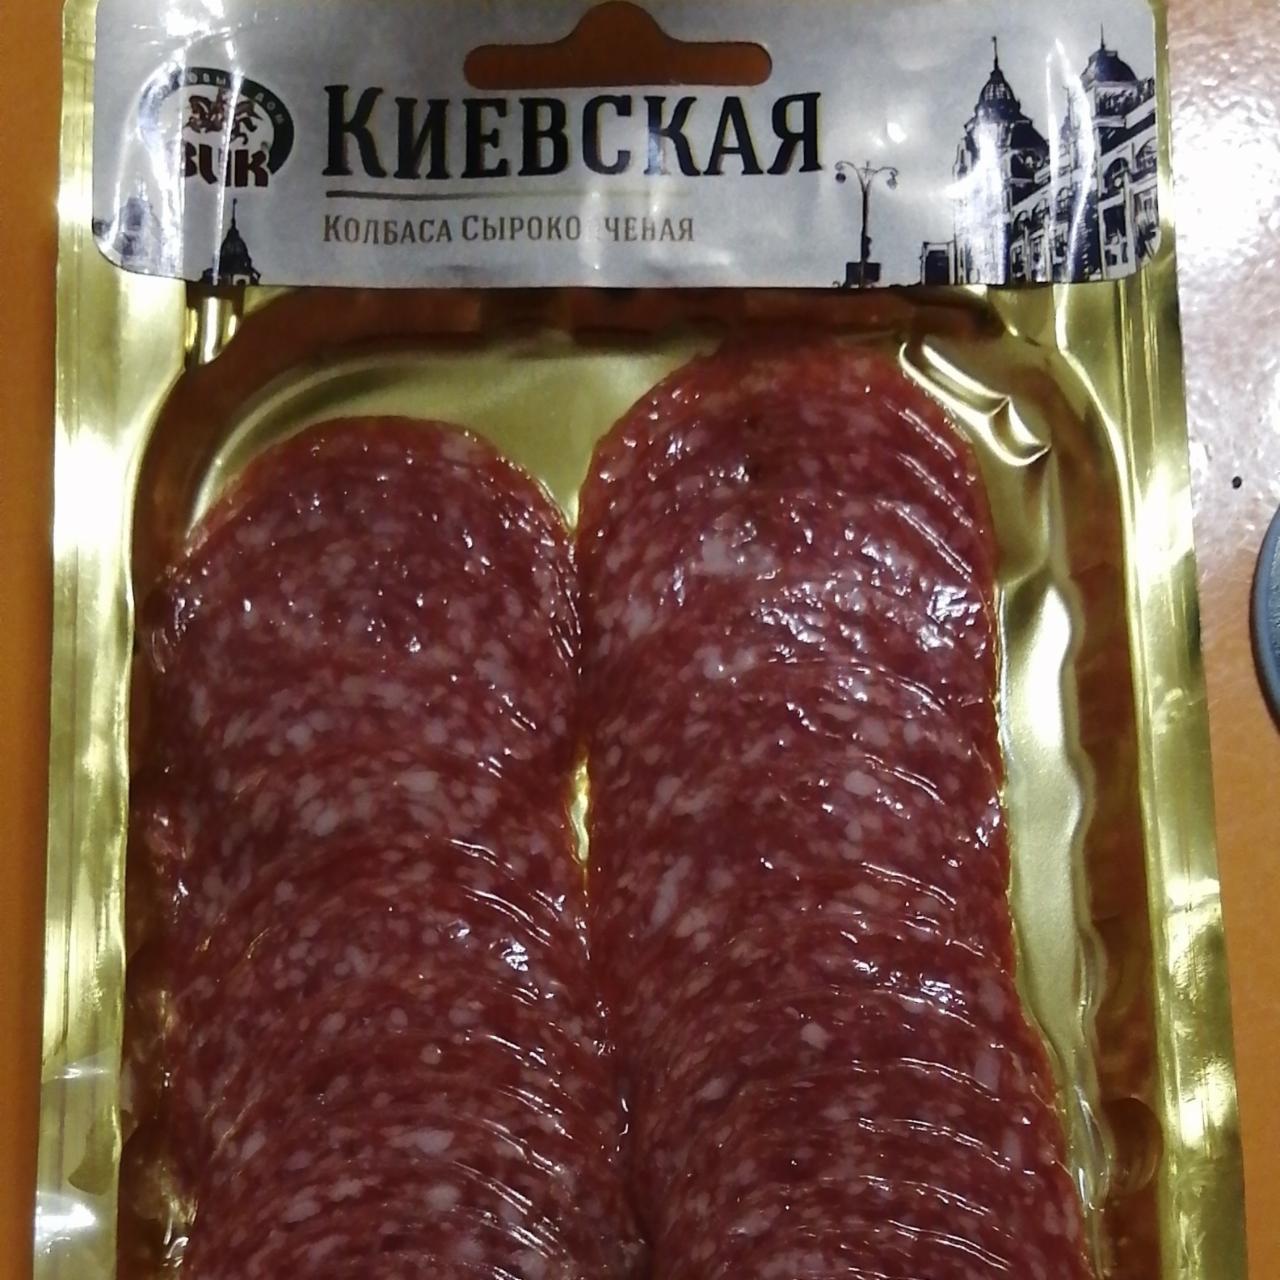 Фото - колбаса сырокопченая Киевская